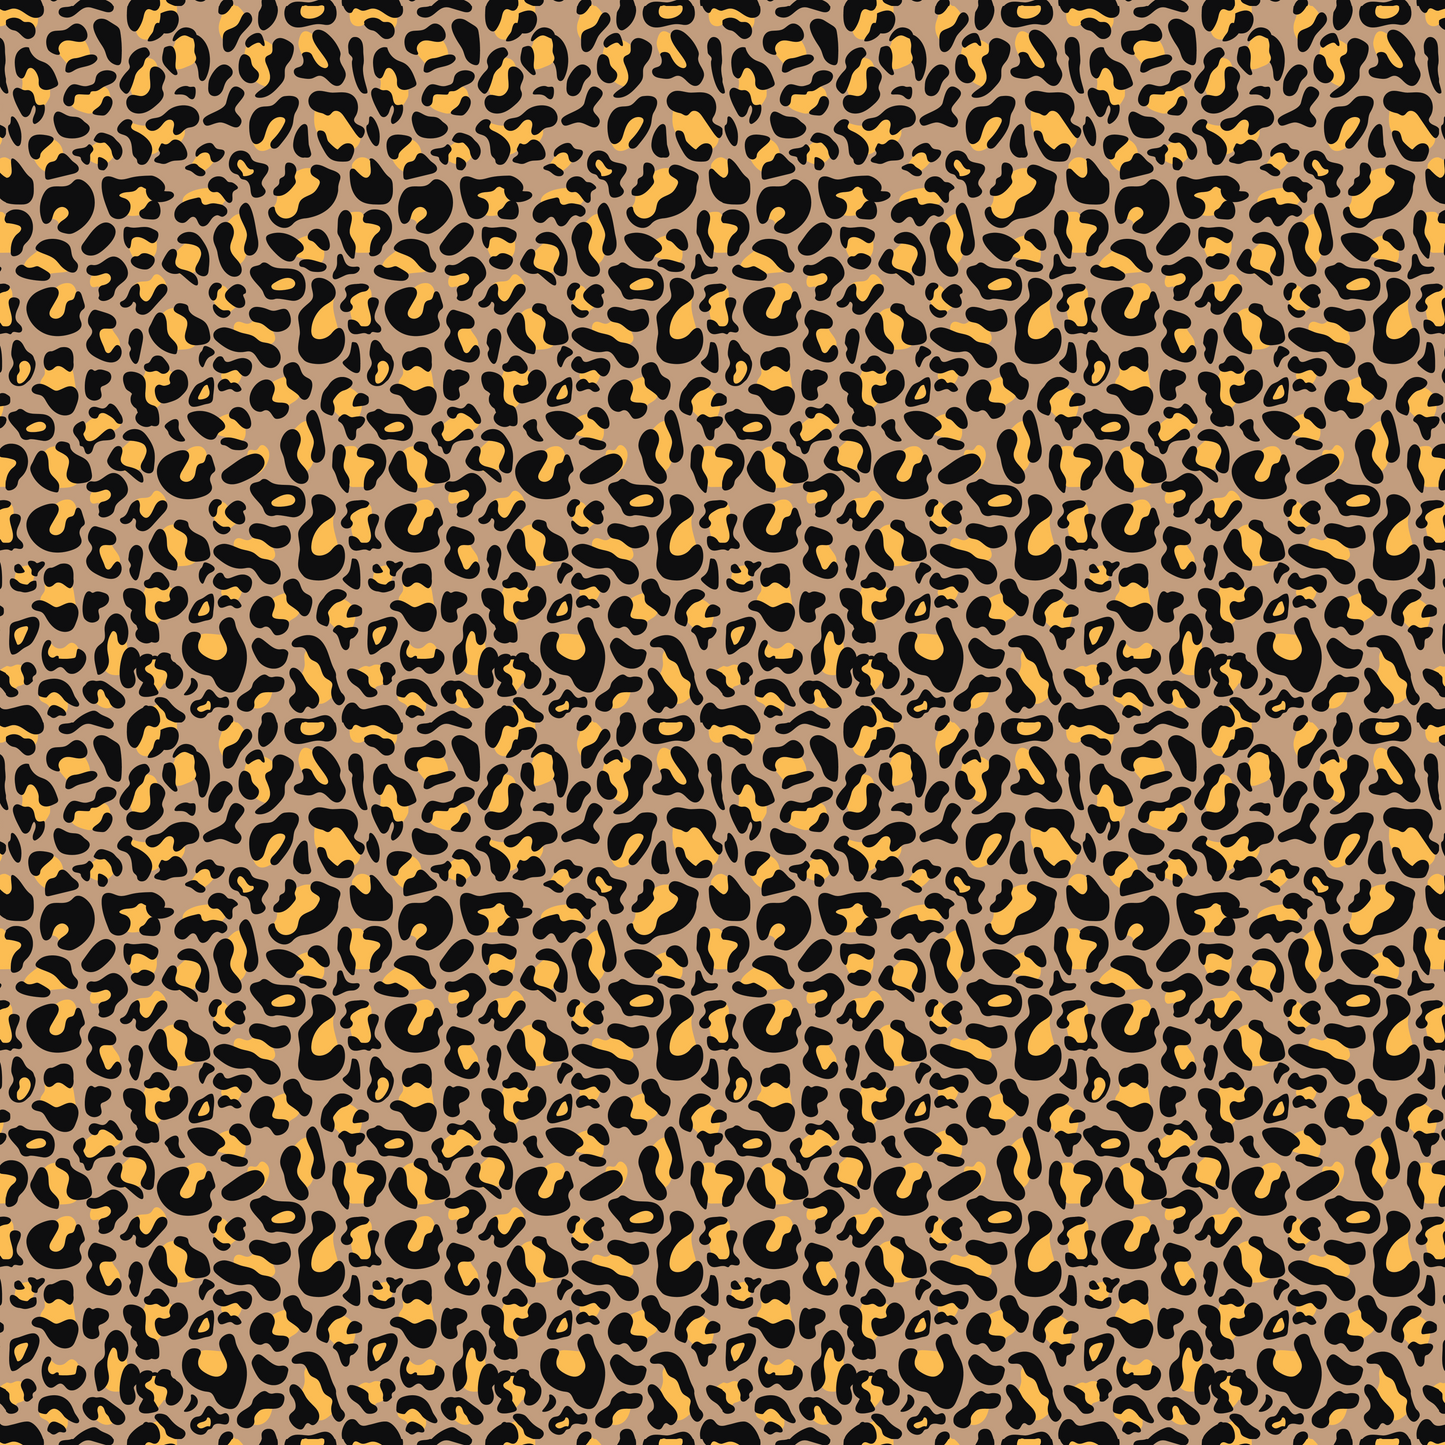 Léopard coloré - Taches d'or sur fond coloré 007